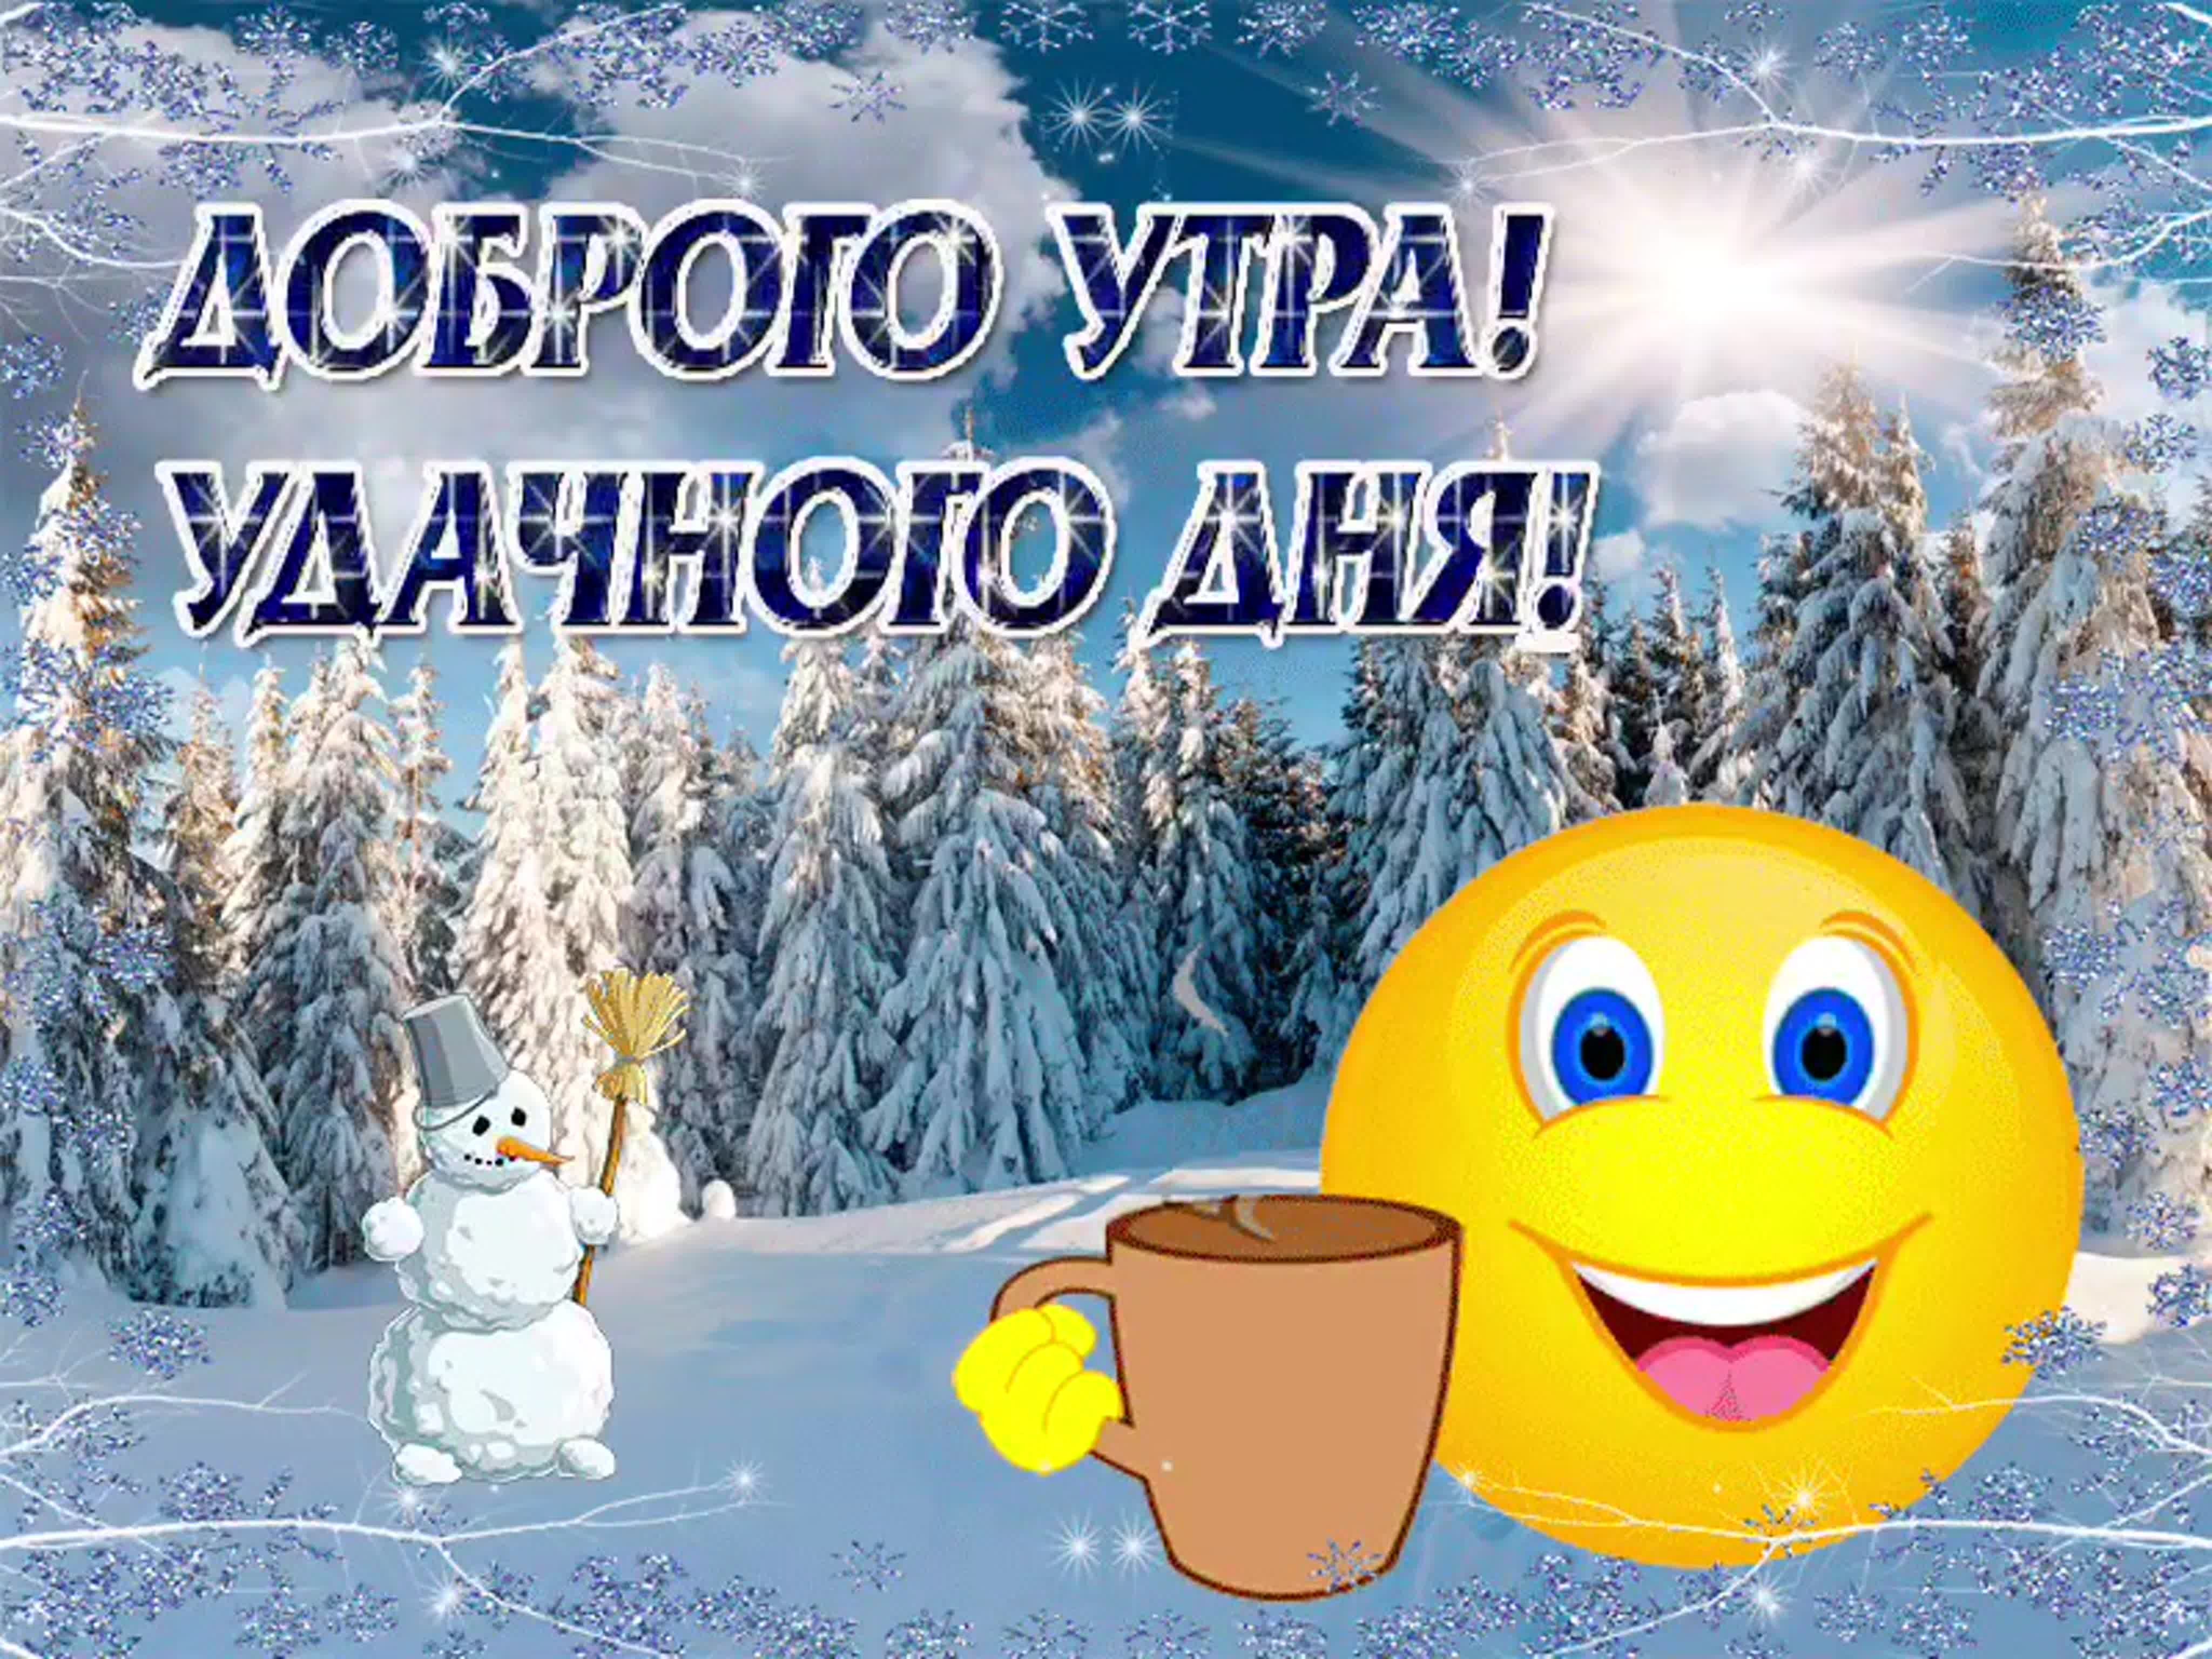 Пожелание хорошего зимнего дня красивые картинки. Доброго зимнего утра и хорошего дня. Удачного зимнего дня и отличного настроения. Доброе утро хорошего дня зима. Доброе утро зимнее хорошего дея.